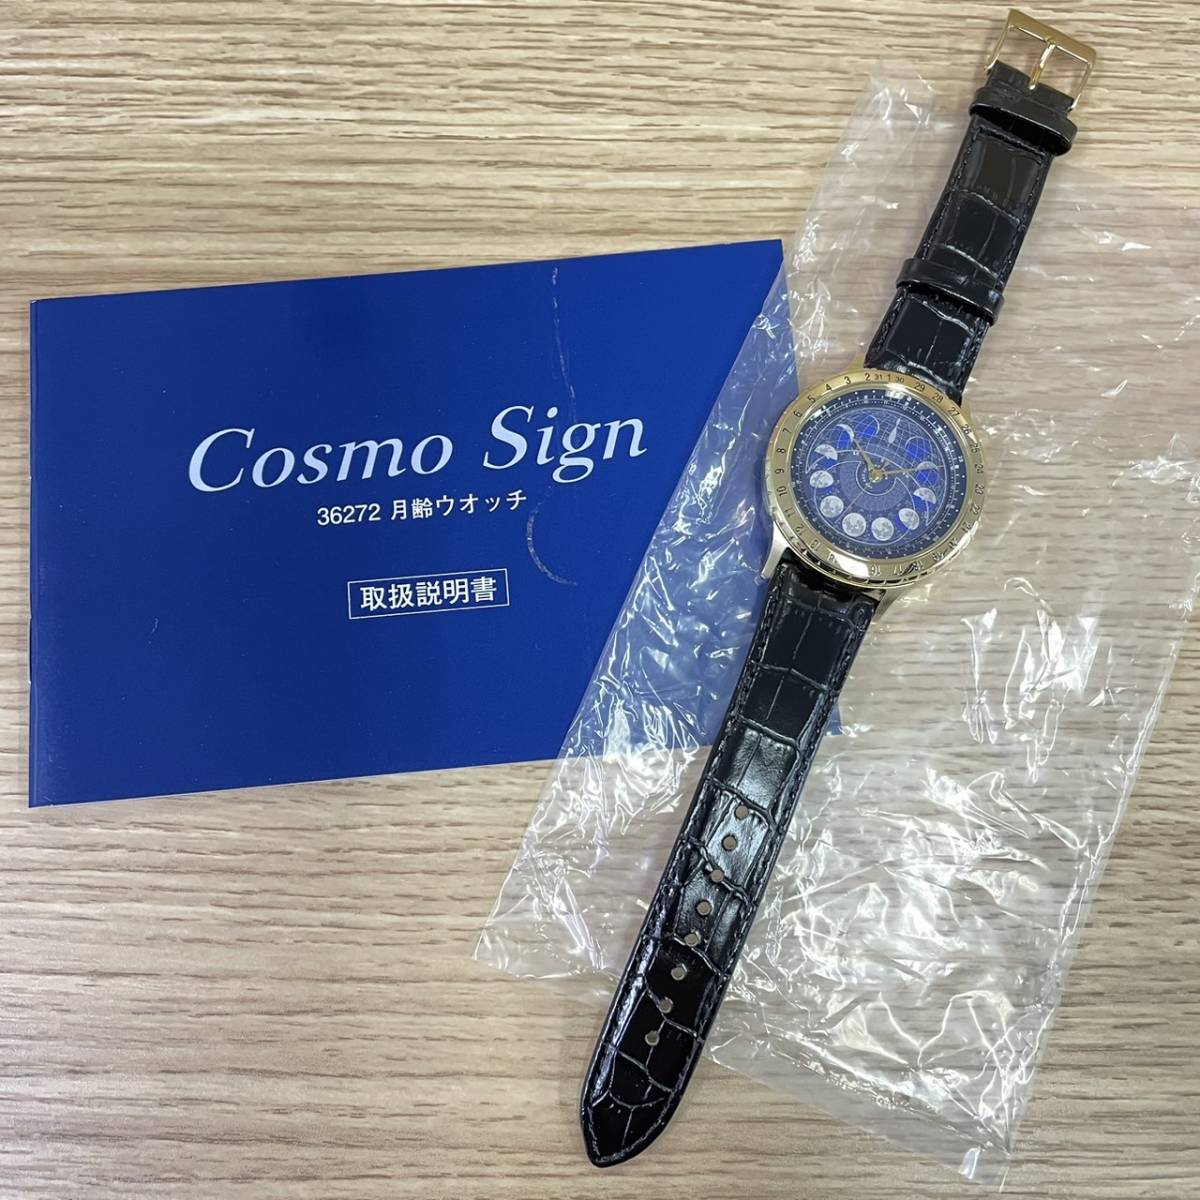 【K-T418-2】 Cosmo Sign 月齢ウォッチ CAL-4P85 CITIZEN 腕時計 シチズン コスモサイン フランクリンミント メンズ クォーツ 未使用 不動_画像1